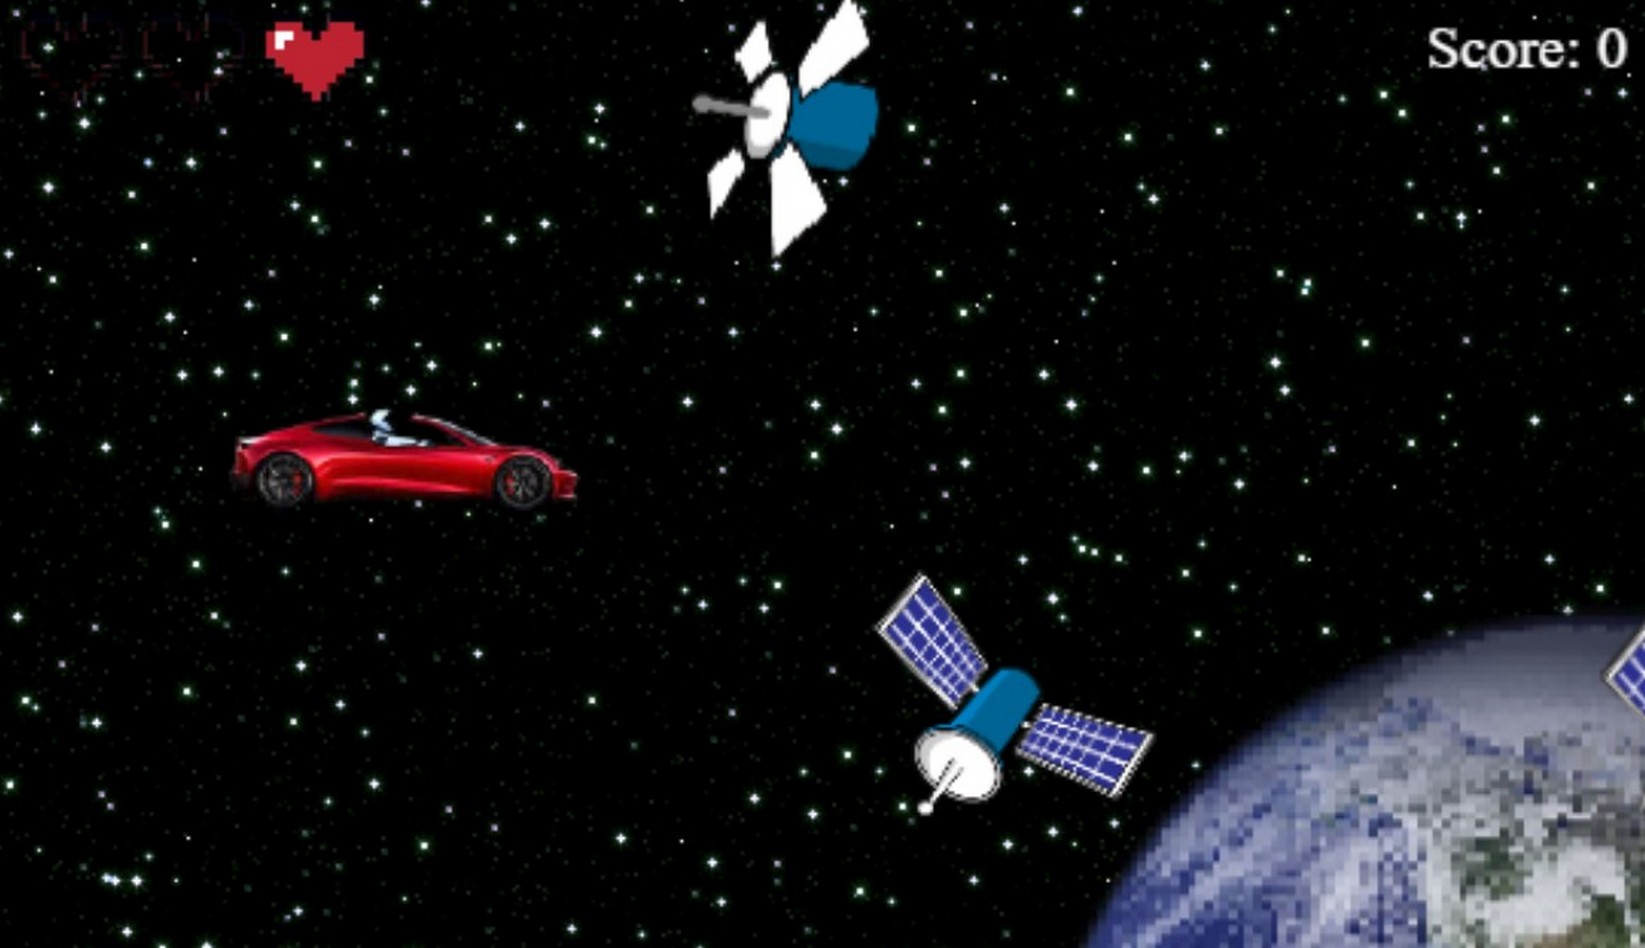 Extrait du jeu vidéo Starman Tesla Game. © AutoWise